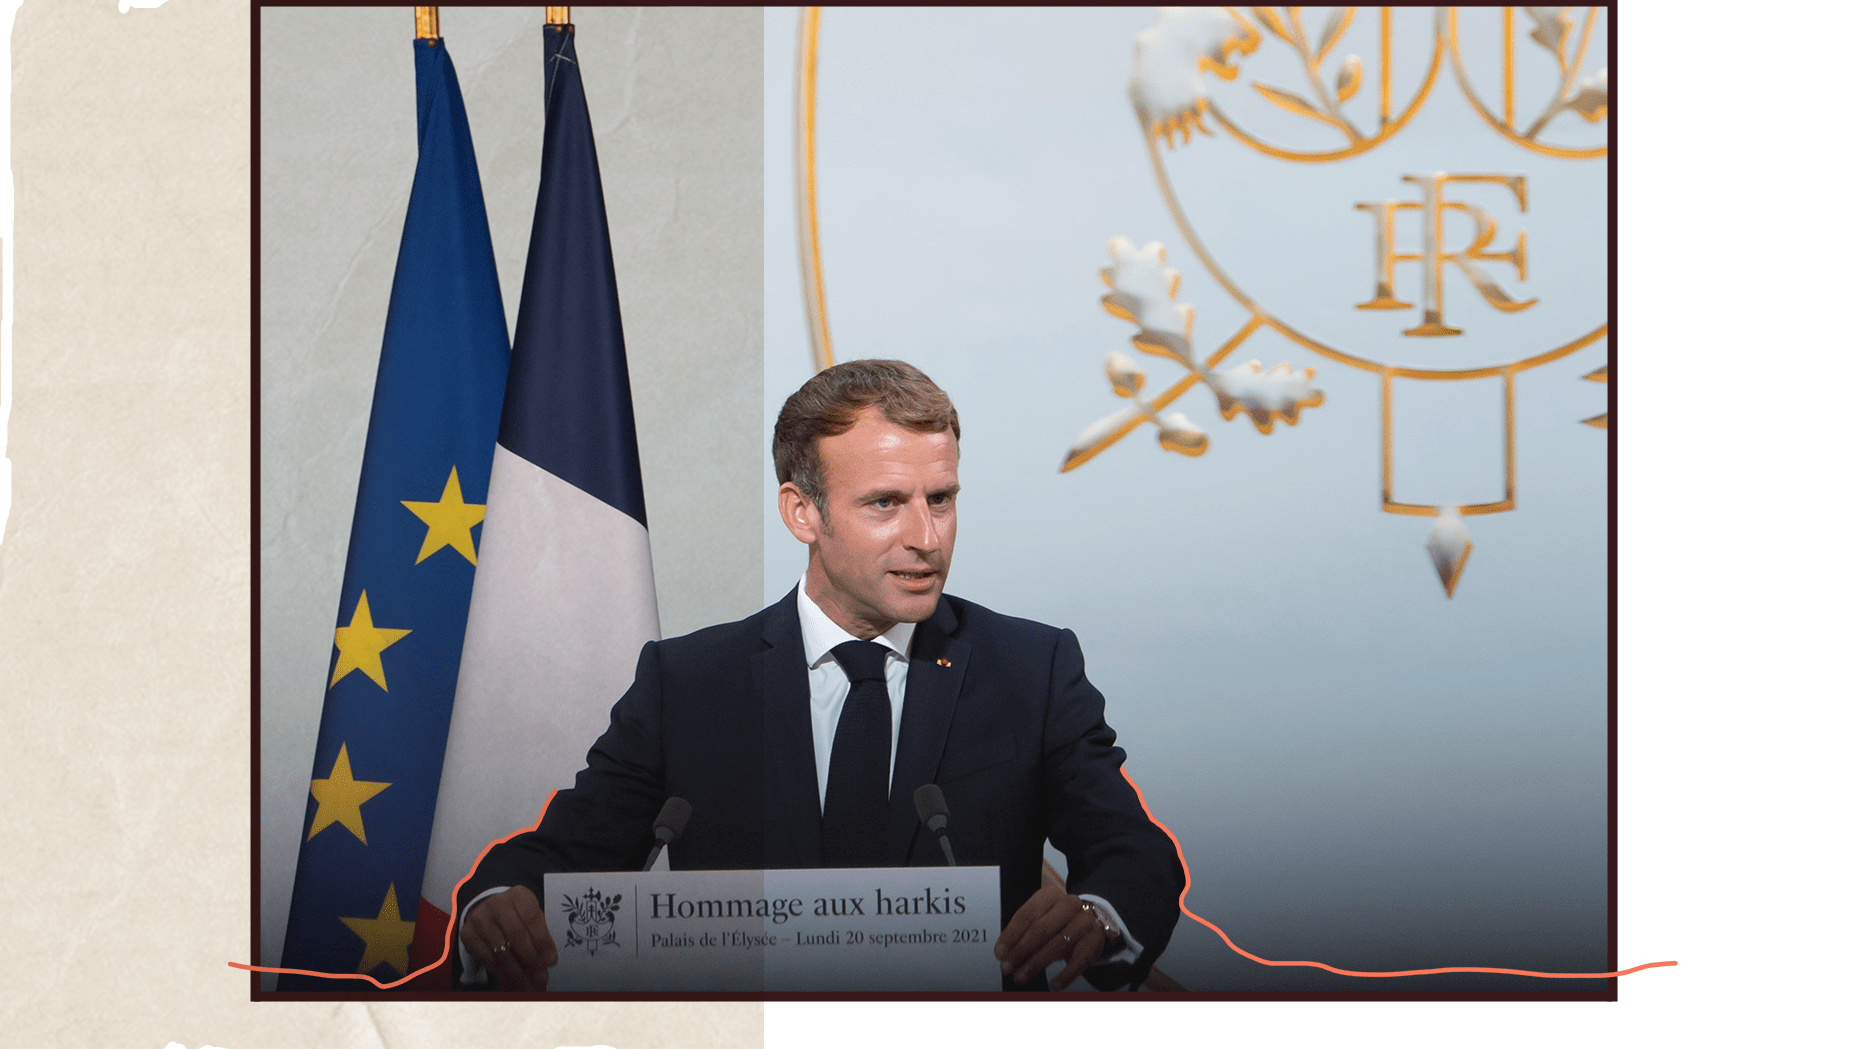 Vue officielle du Président de la République Emmanuel Macron, demandant pardon aux Harkis au nom de la République le 20 septembre 2021 à Paris